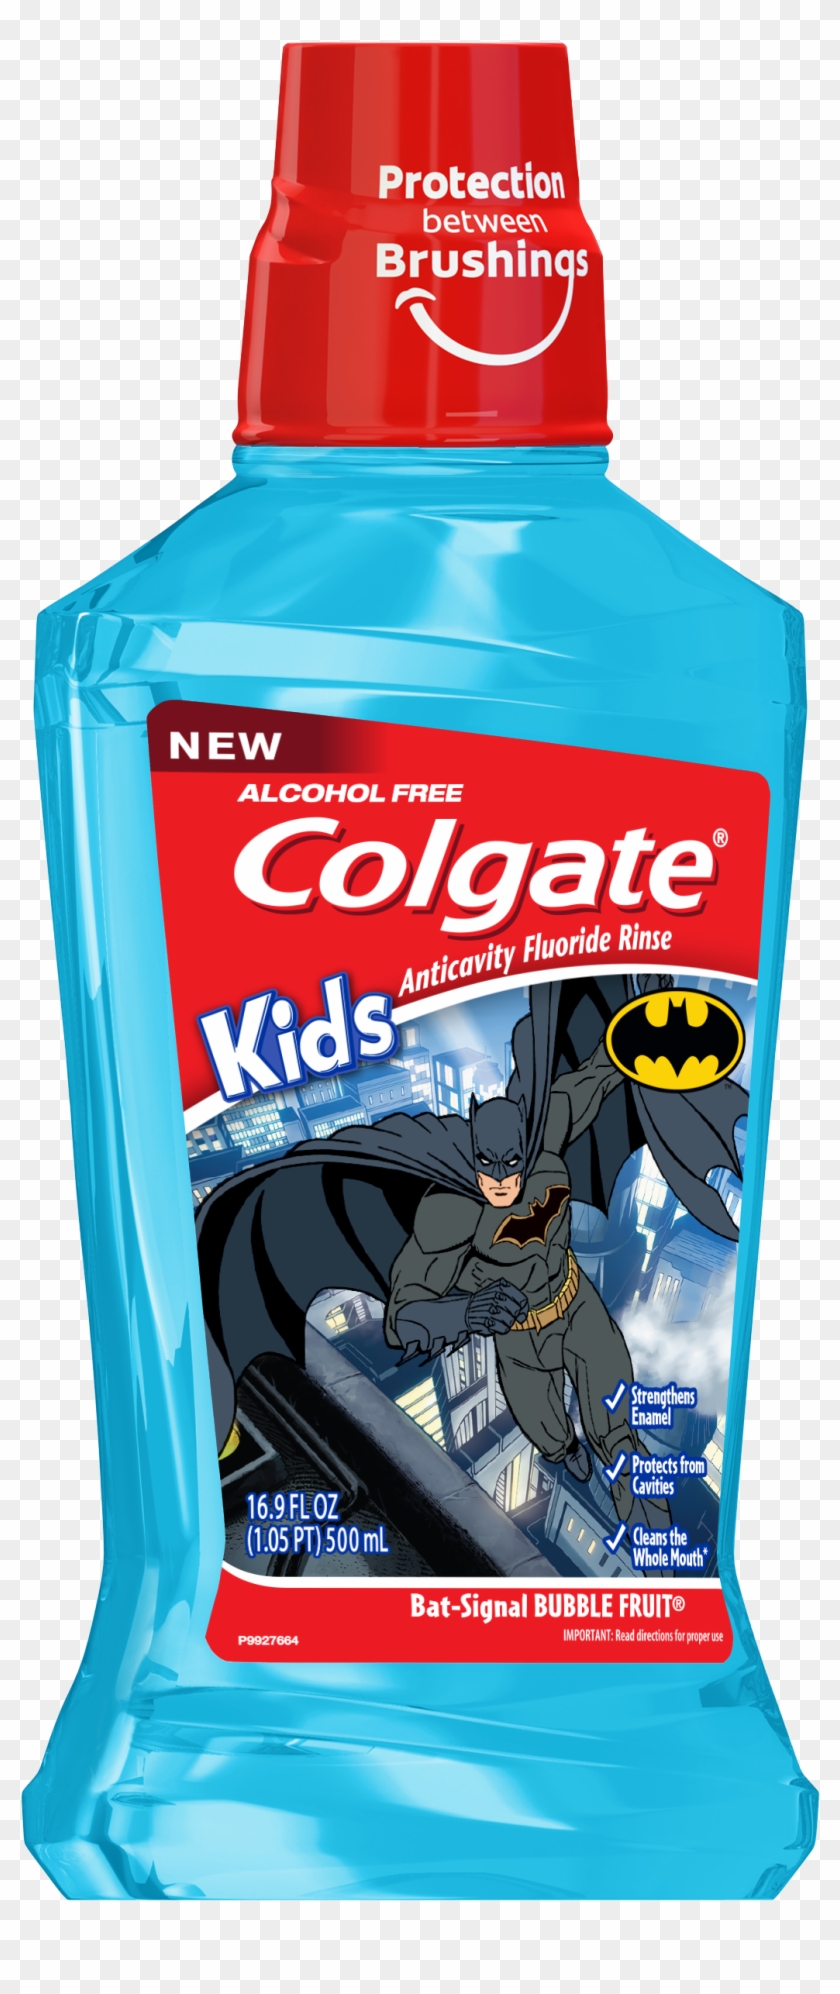 Colgate Kids Batman Mouthwash 500ml - Batman Mouthwash Clipart #2728803